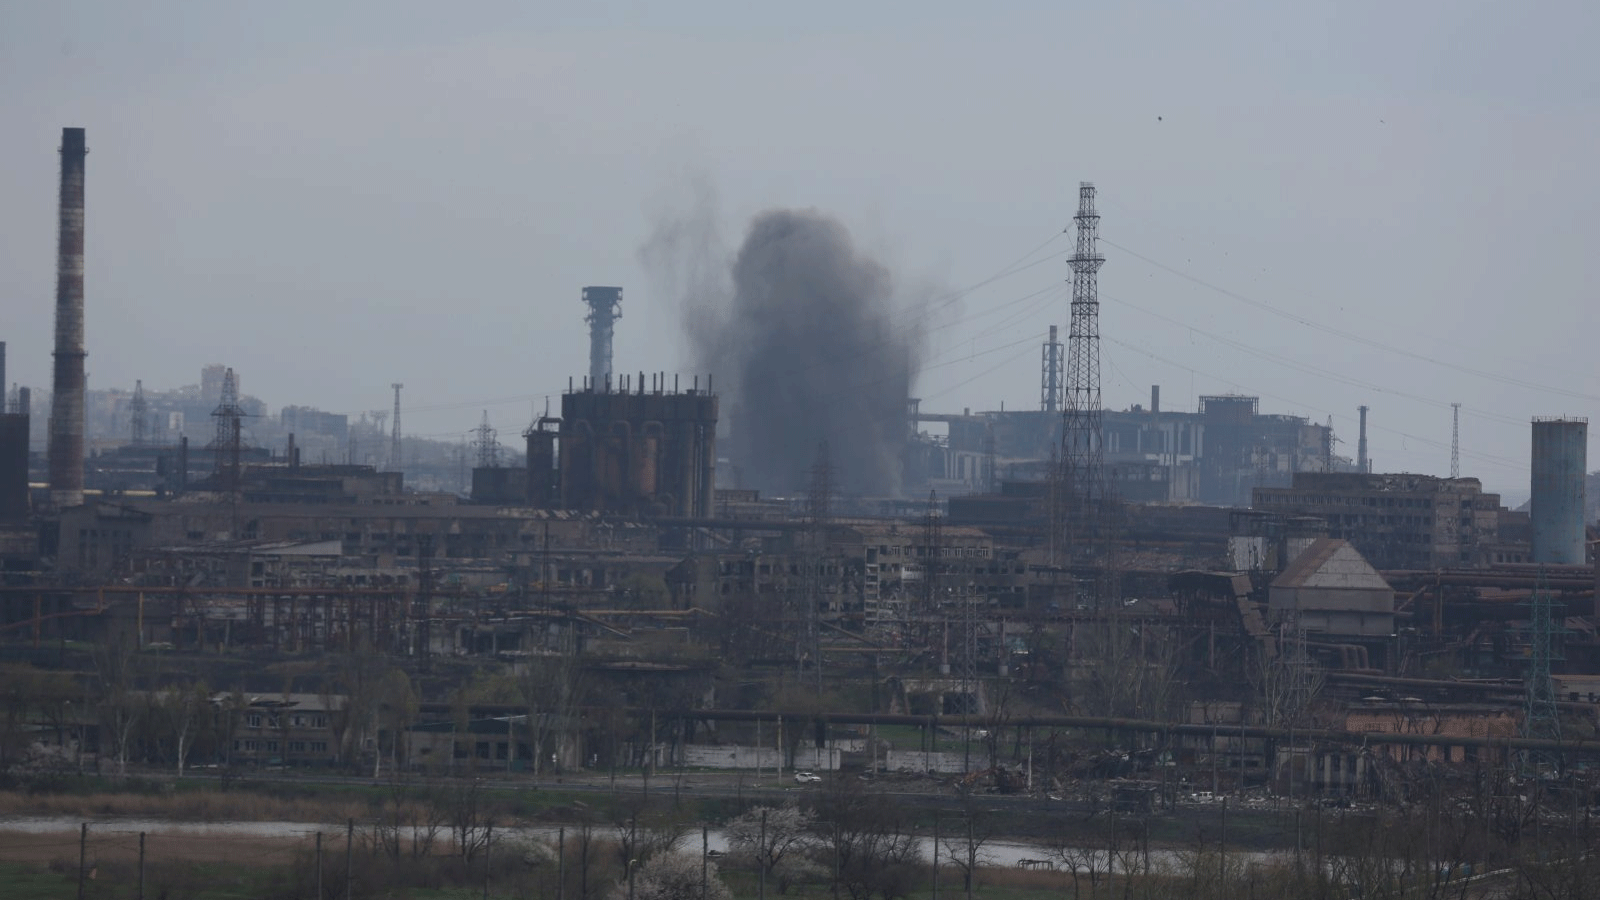 الدخان يتصاعد من مصنع آزوفستال حيث سيطر الجيش الروسي على مدينة ماريوبول الساحلية المحاصرة باستثناء مصنع آزوفستال، 22 نيسان\ أبريل 2022